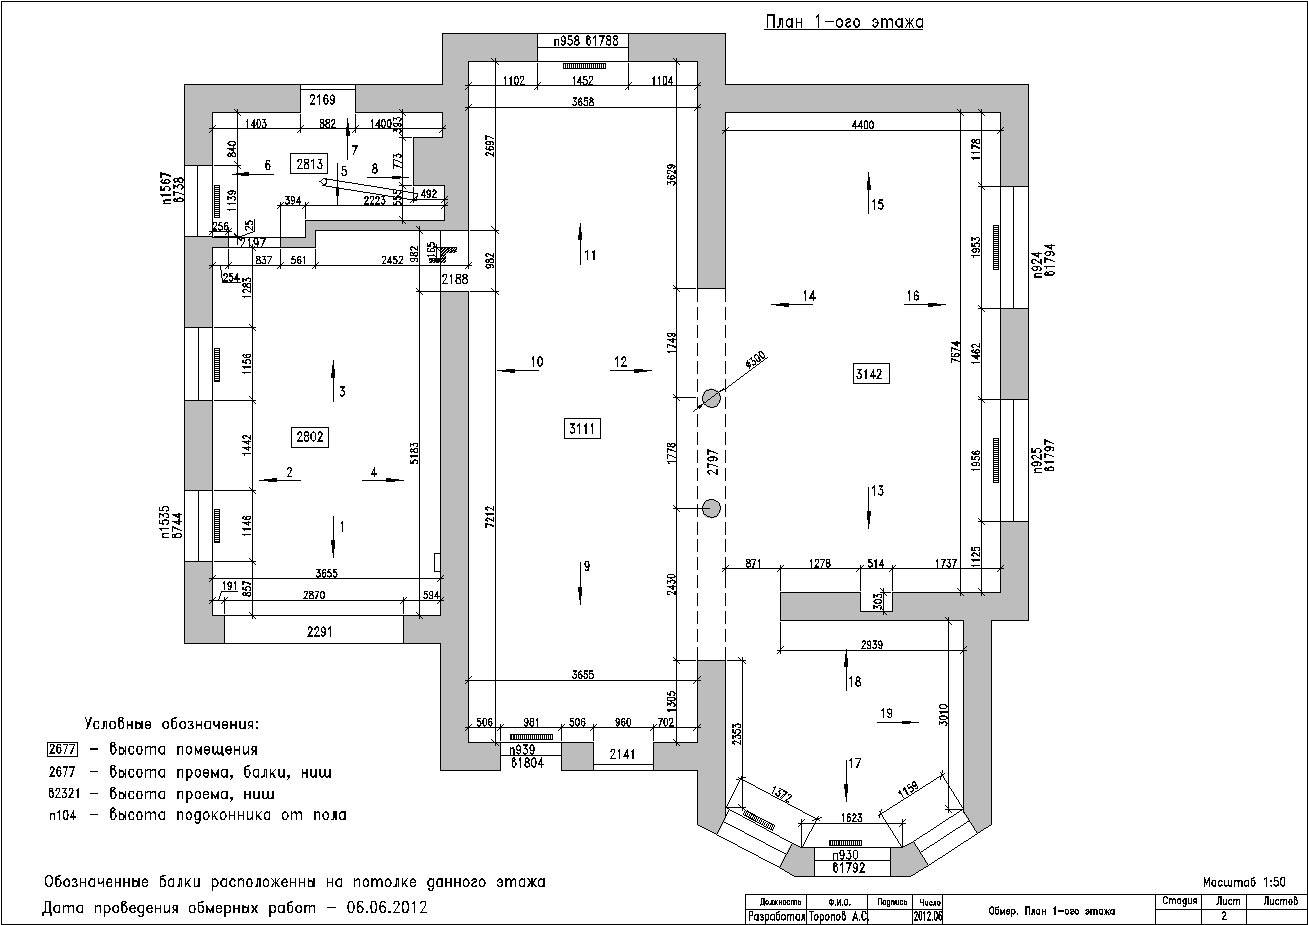 На примере - обмерный план этажа, где указаны характеристики нескольких помещений после обмера.